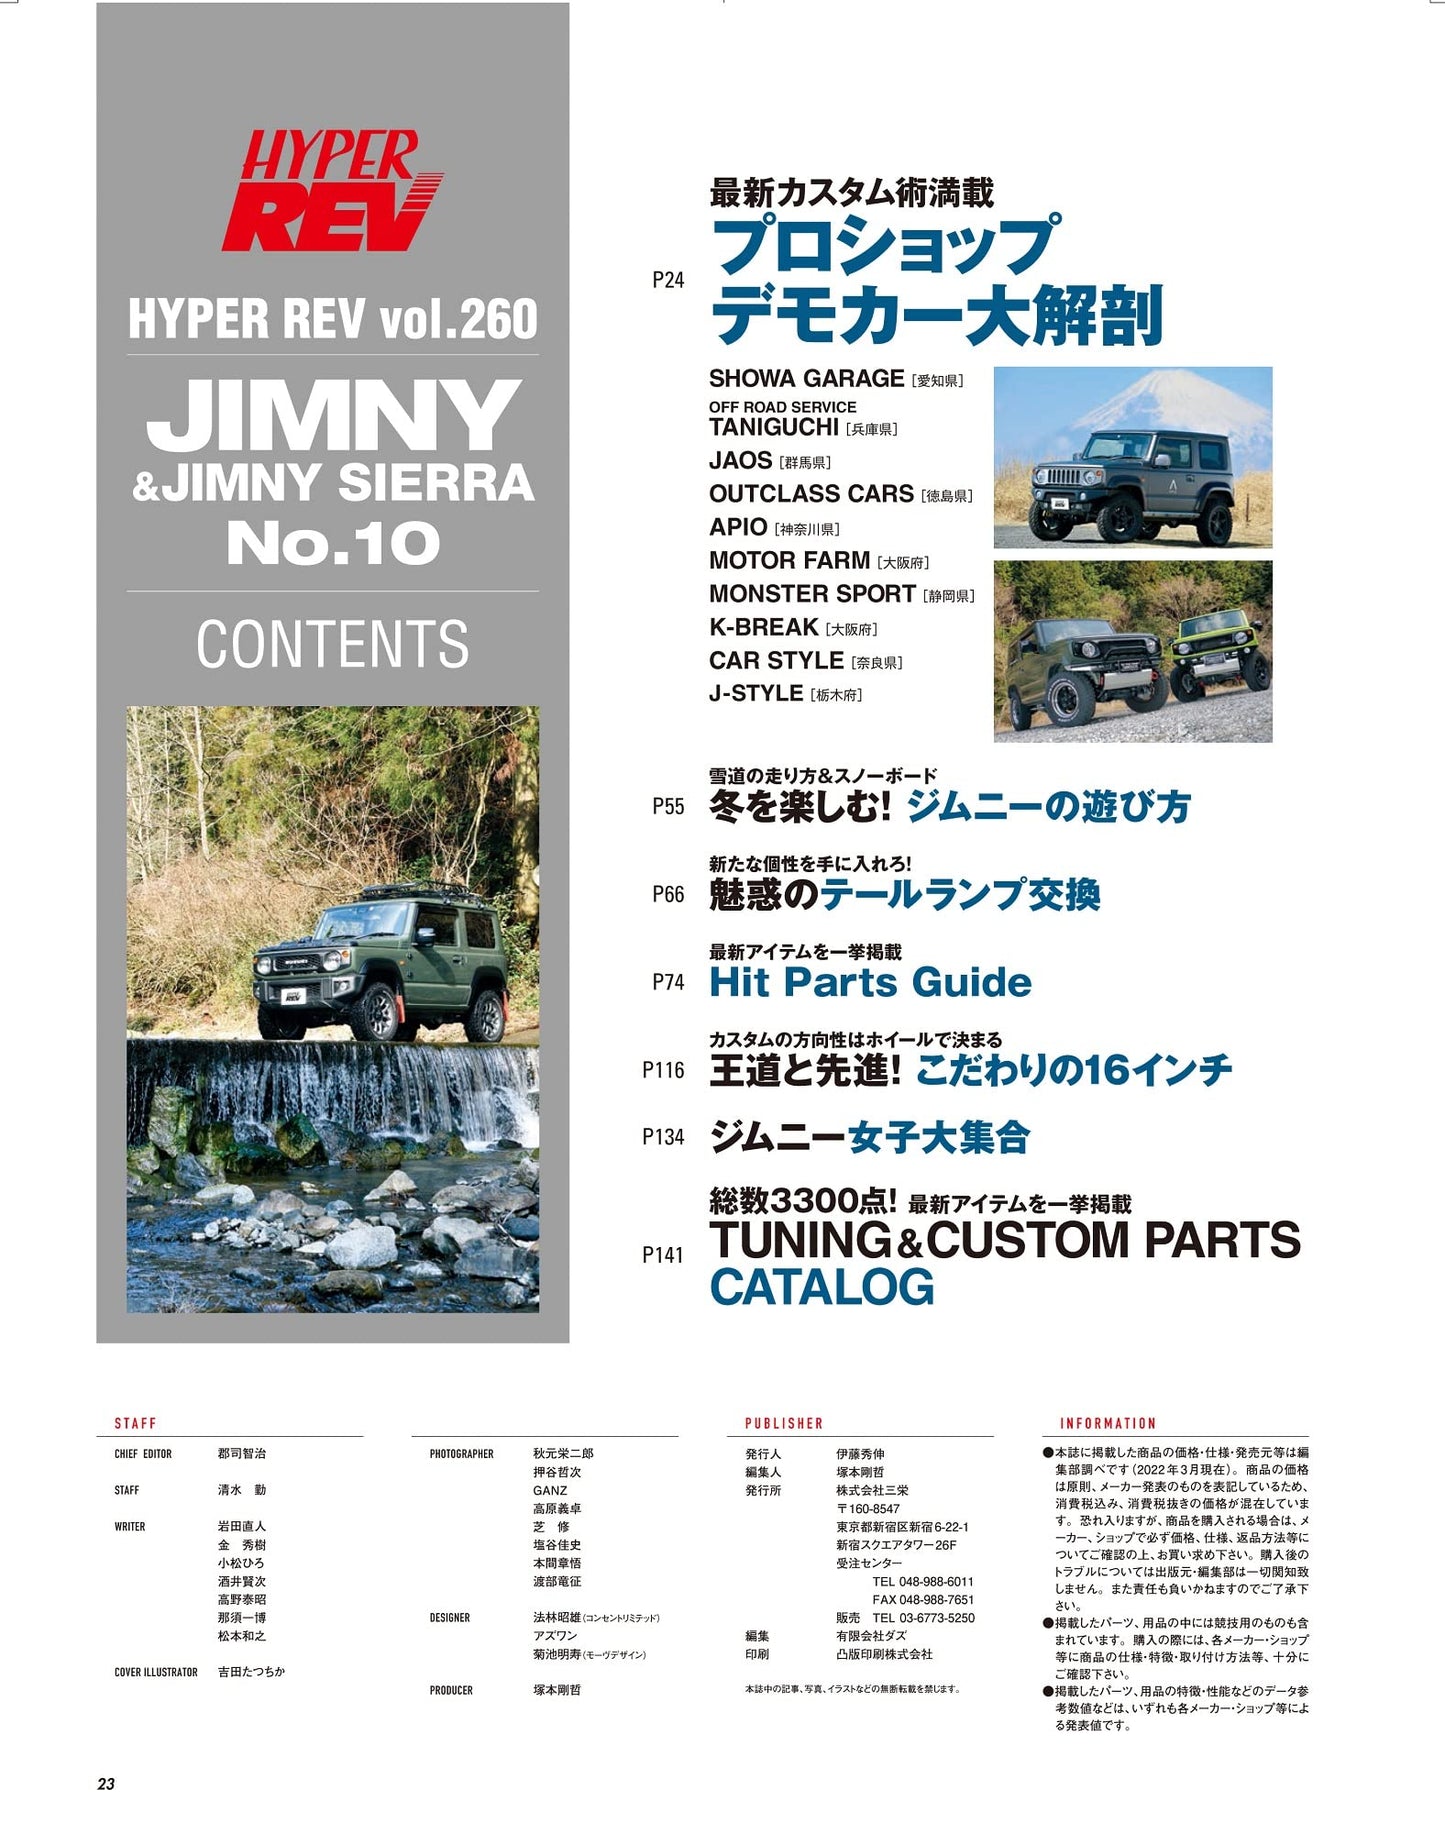 HYPER REV Vol.260 SUZUKI JIMNY & JIMNY SIERRA No.10